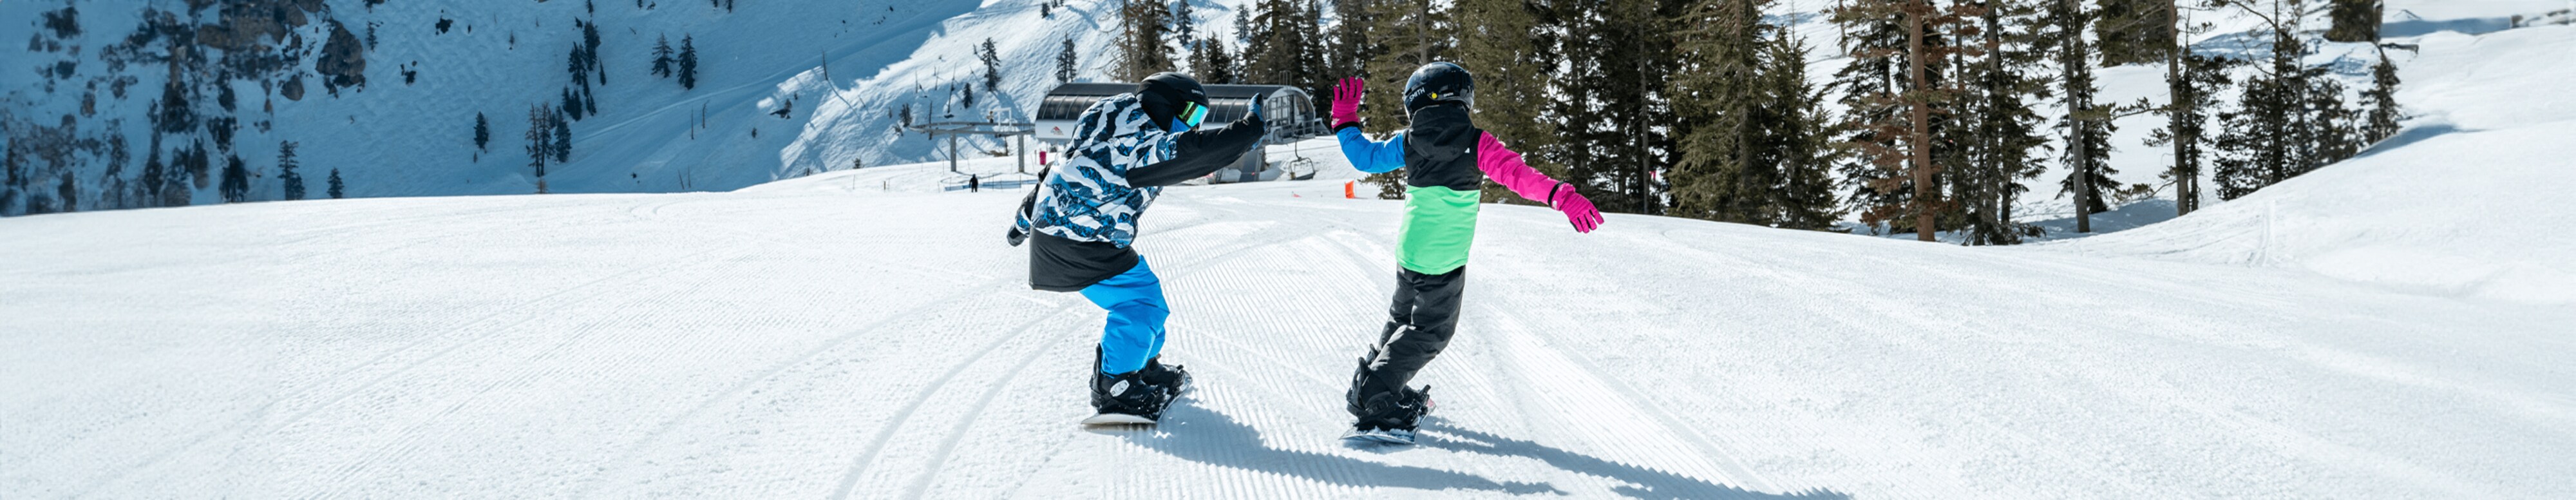 Deux enfants se font un tape m’en cinq tout en faisant de la planche à neige sur les pistes d’une station de montagne.